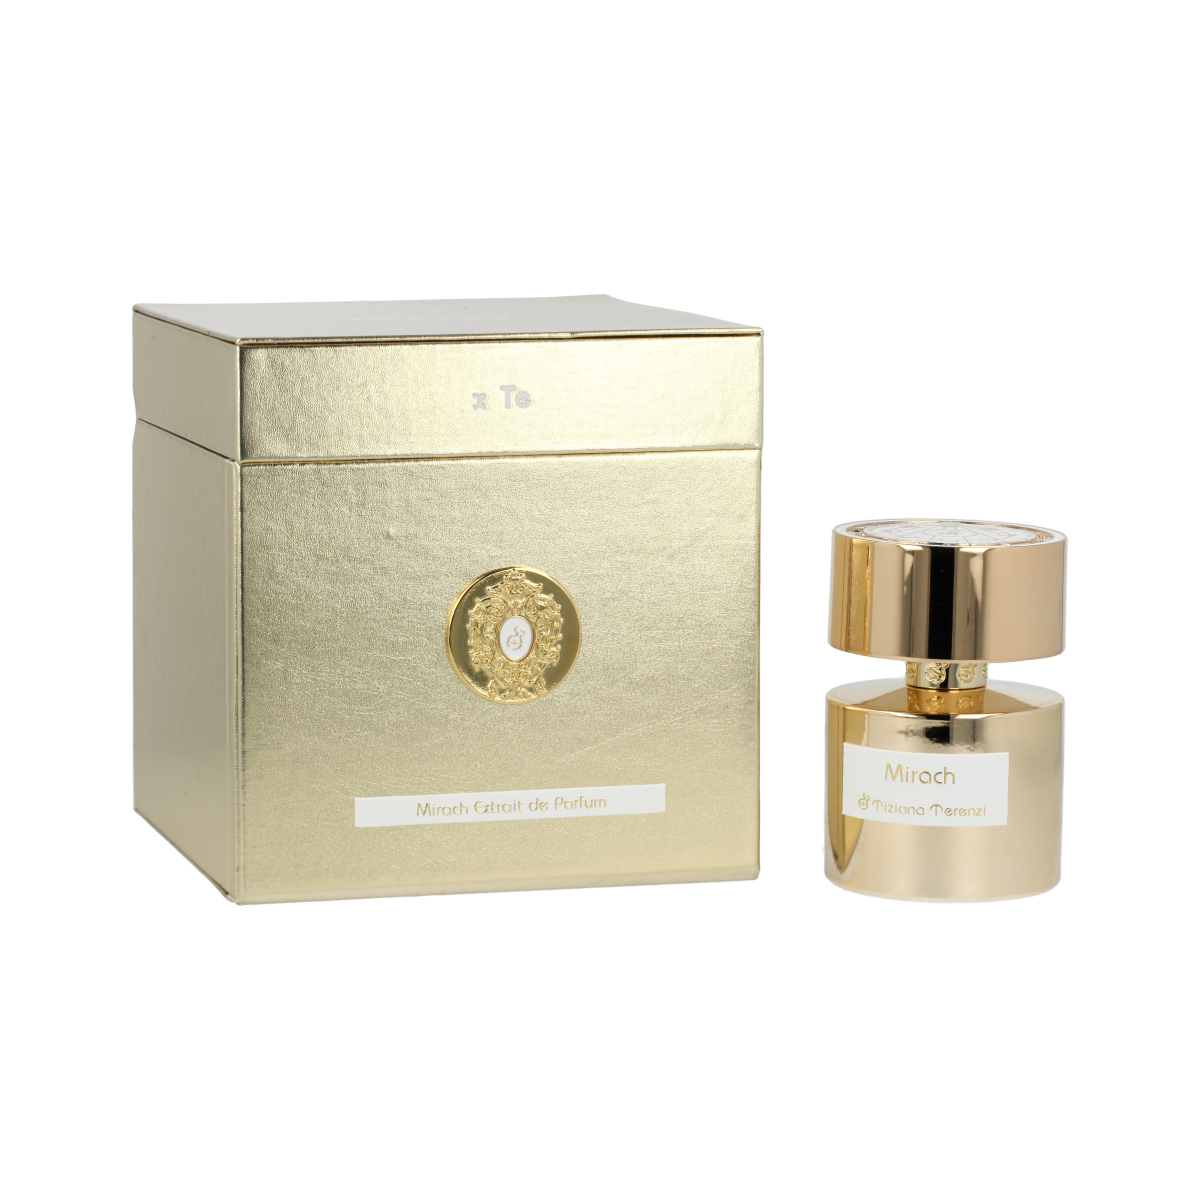 Tiziana Terenzi Mirach 10 ml NIŠINIAI kvepalų mėginukas (atomaizeris) Unisex Parfum